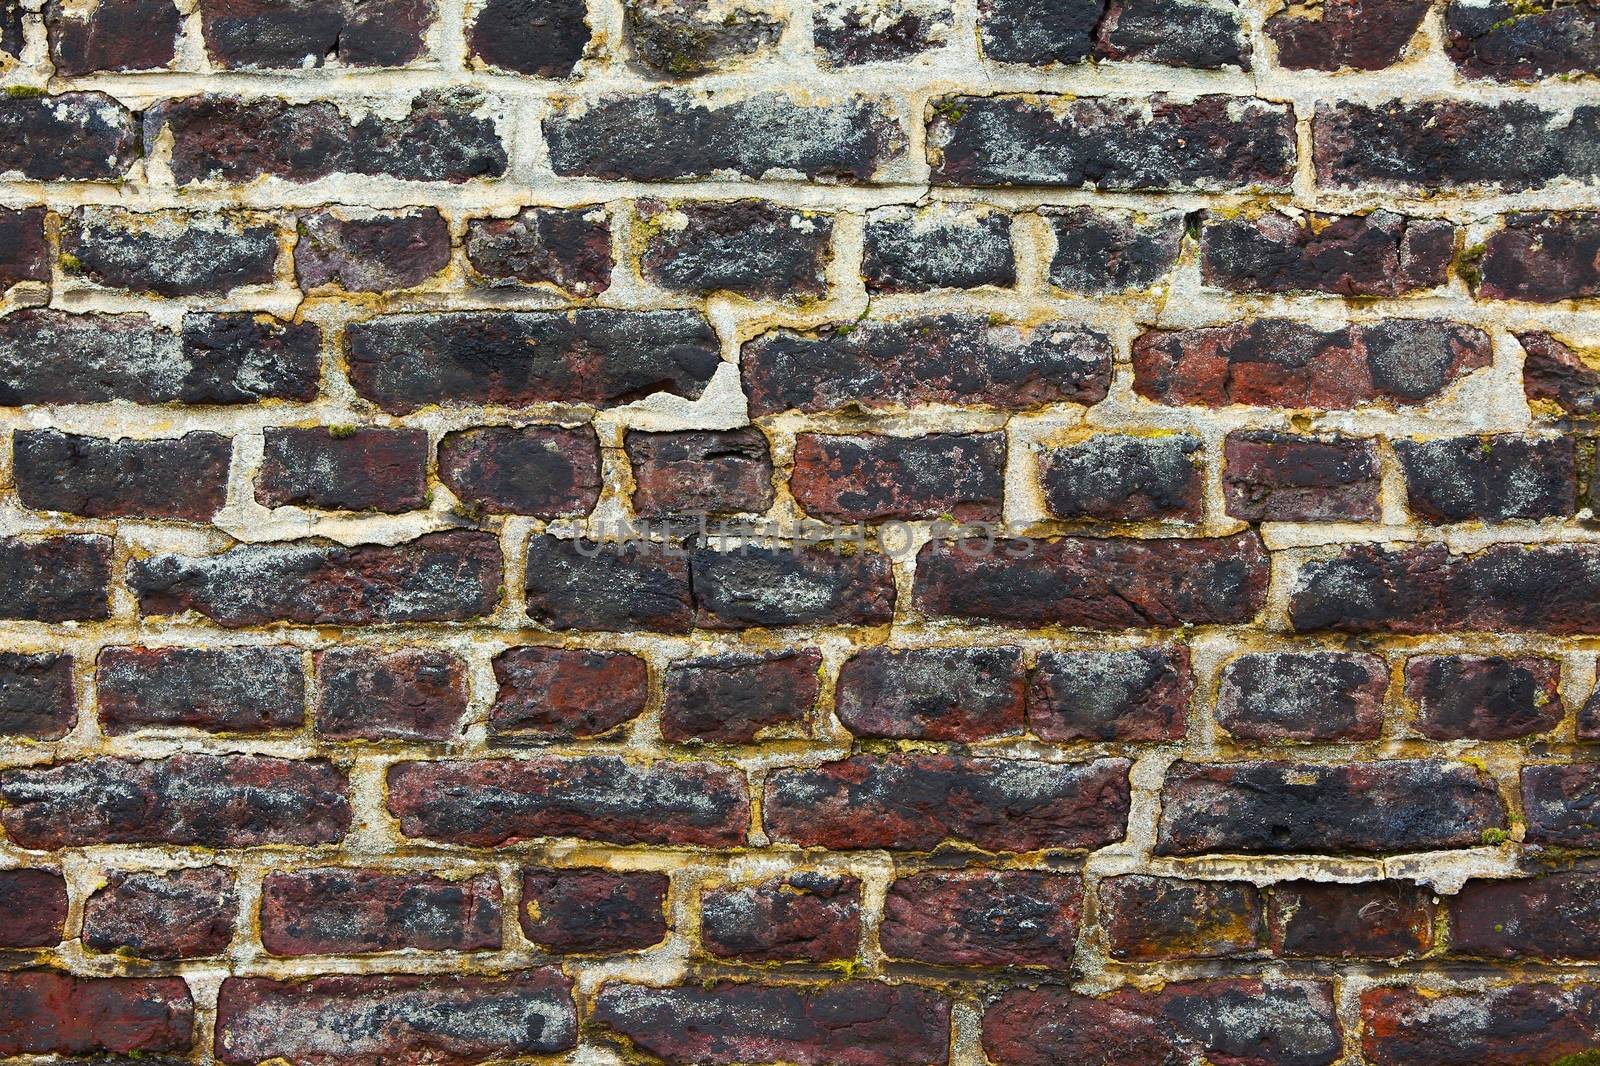 Brick Wall by Gudella